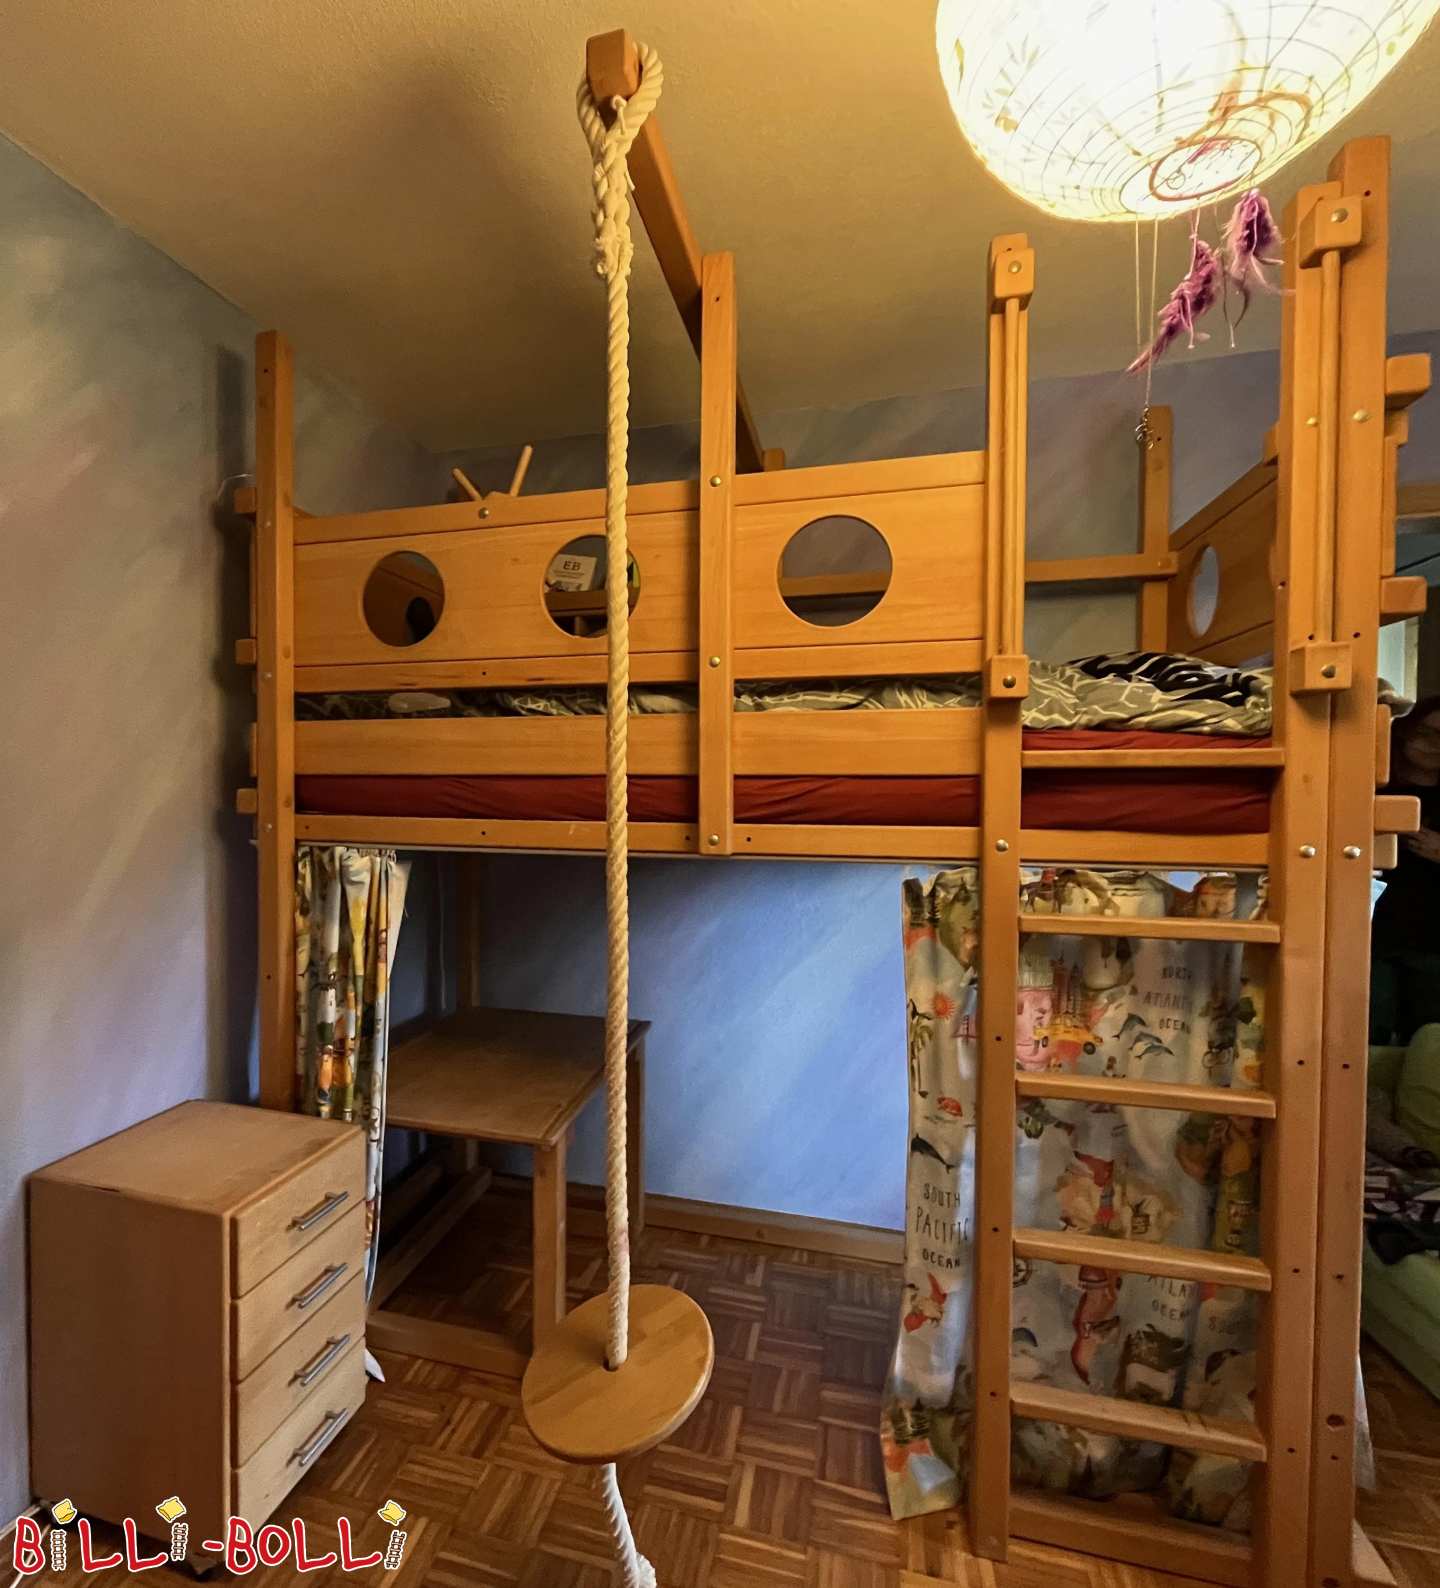 Çeşitli aksesuarlar, çalışma masası ve konteyner ile çocukla birlikte büyüyen loft yatak (Kategori: Çocukla birlikte büyüyen çatı katı yatağı kullanılmış)